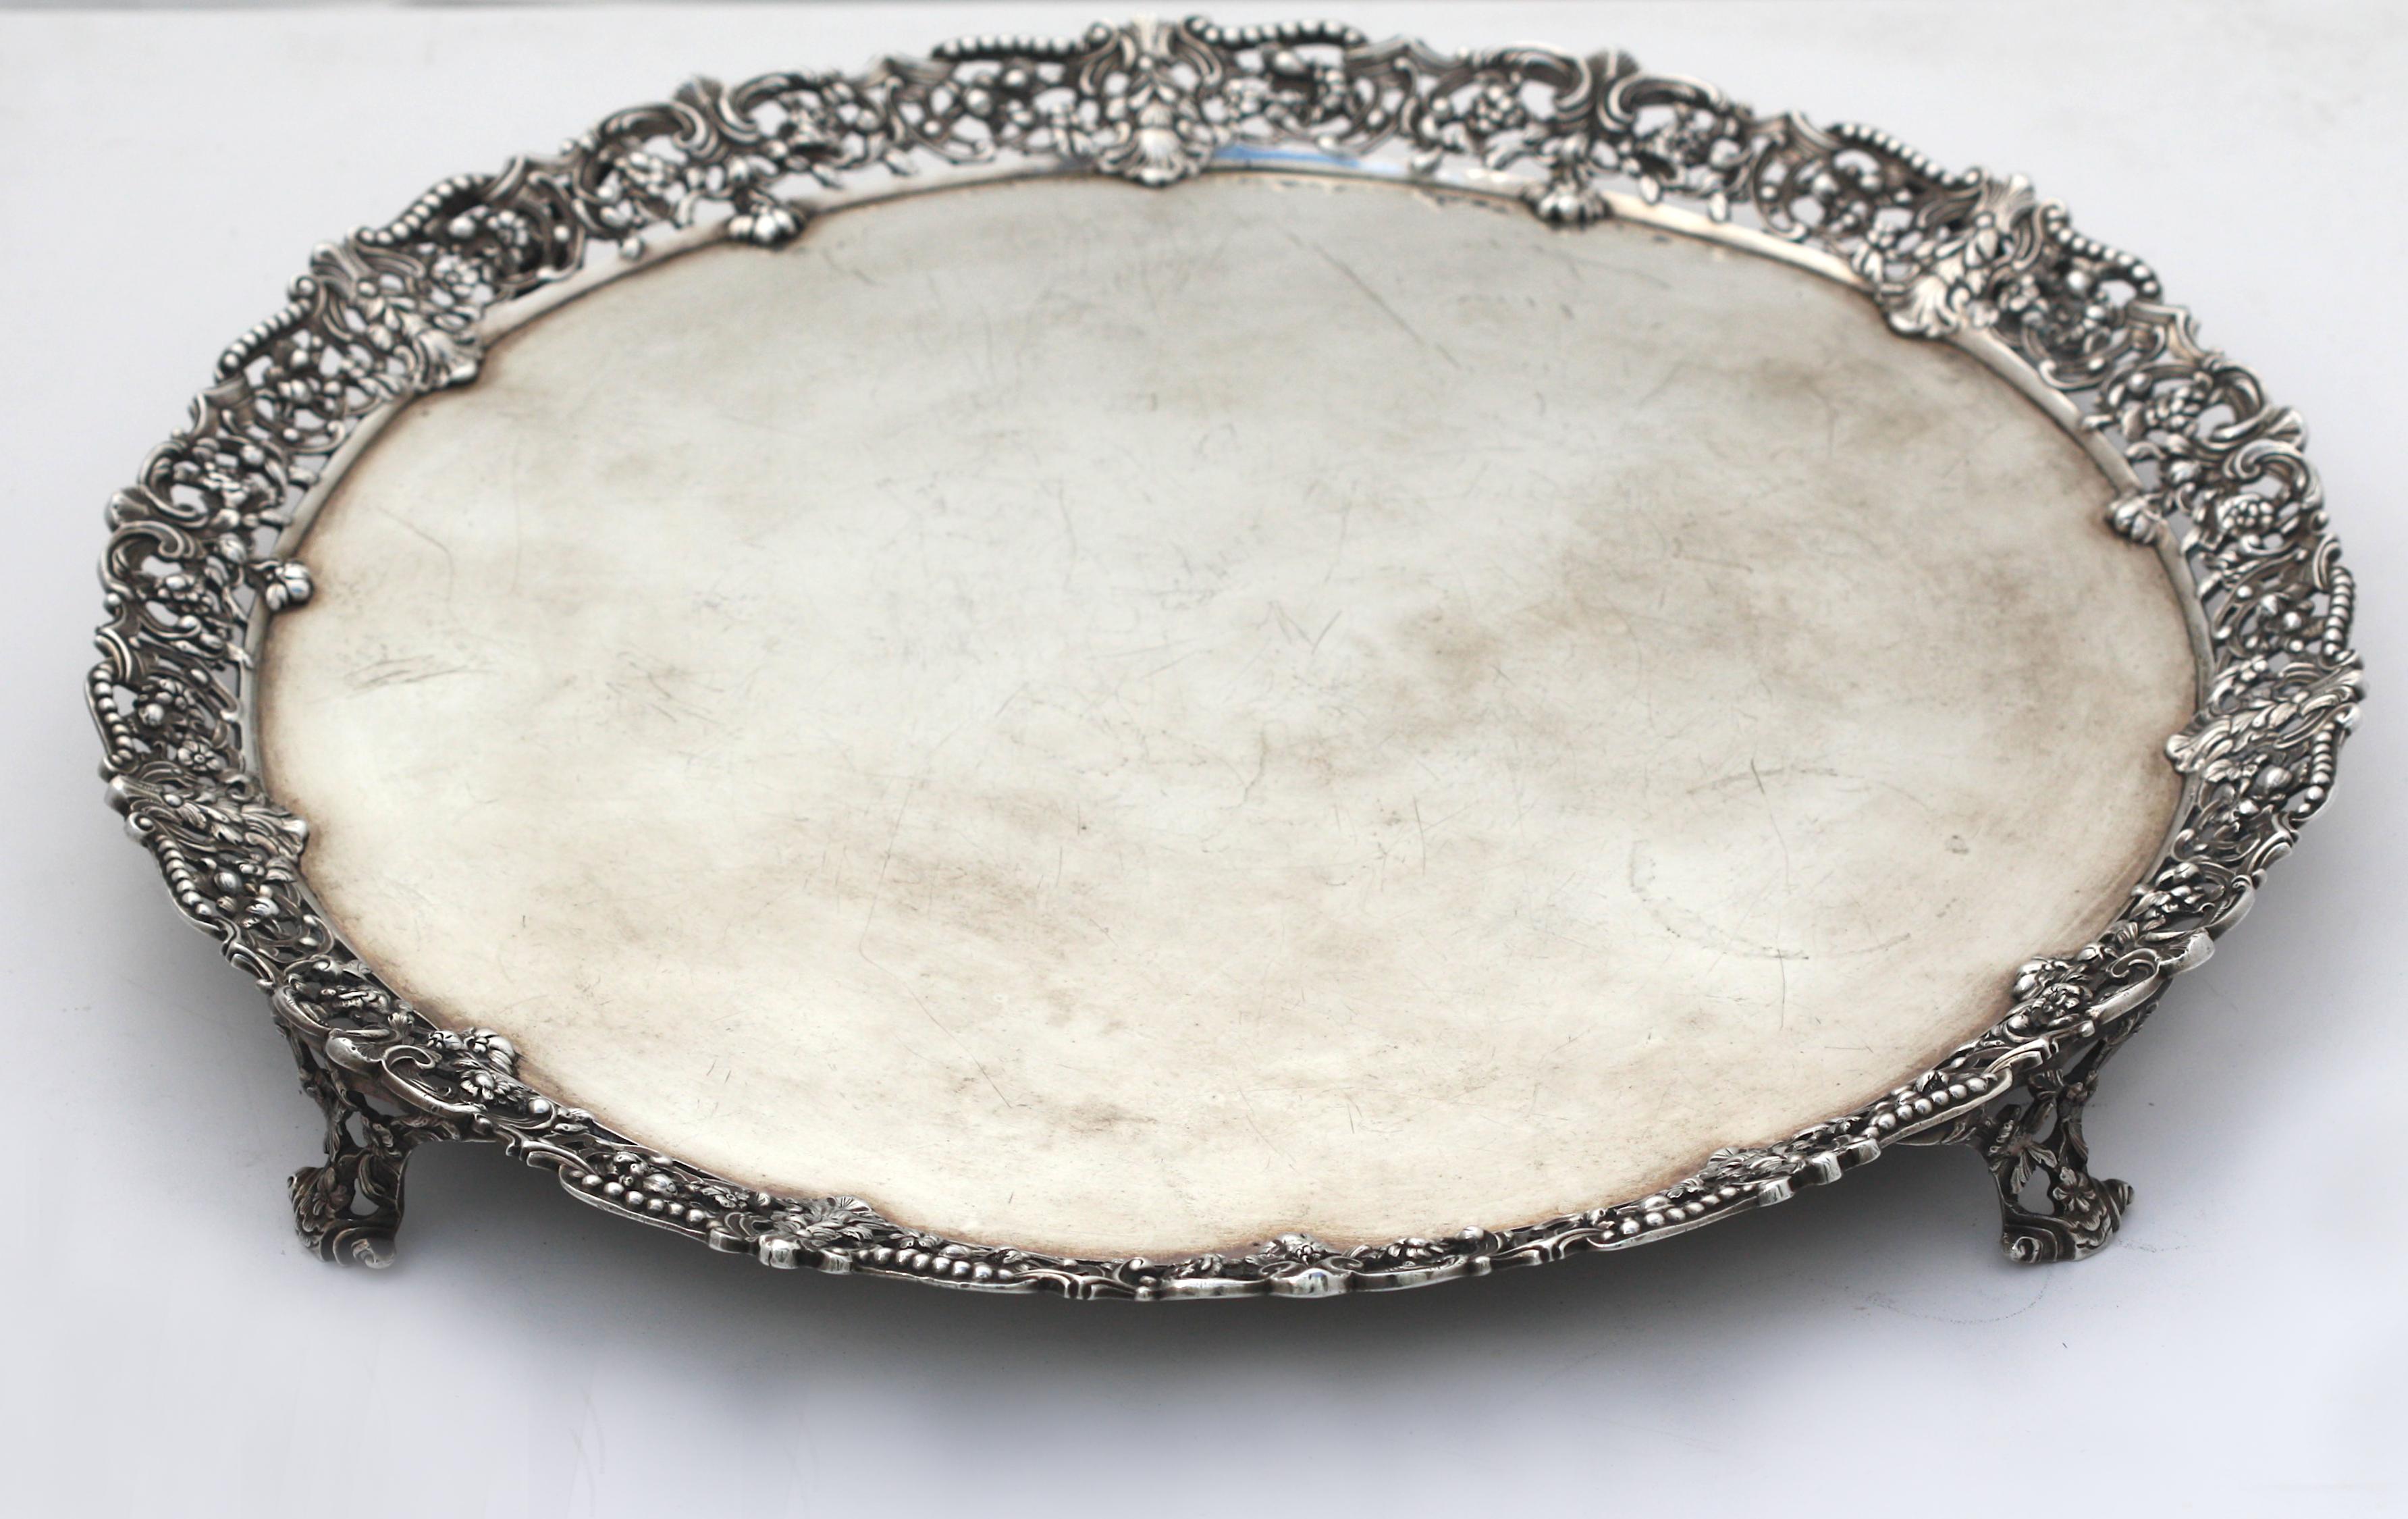 
Plateau de service circulaire à pied en argent de George III
Marqué, Londres, vers 1760, fabricant Richard Rugg. La bordure appliquée est composée de rinceaux entrelacés de feuillage ouvert et de bordures de perles partielles, et repose sur quatre